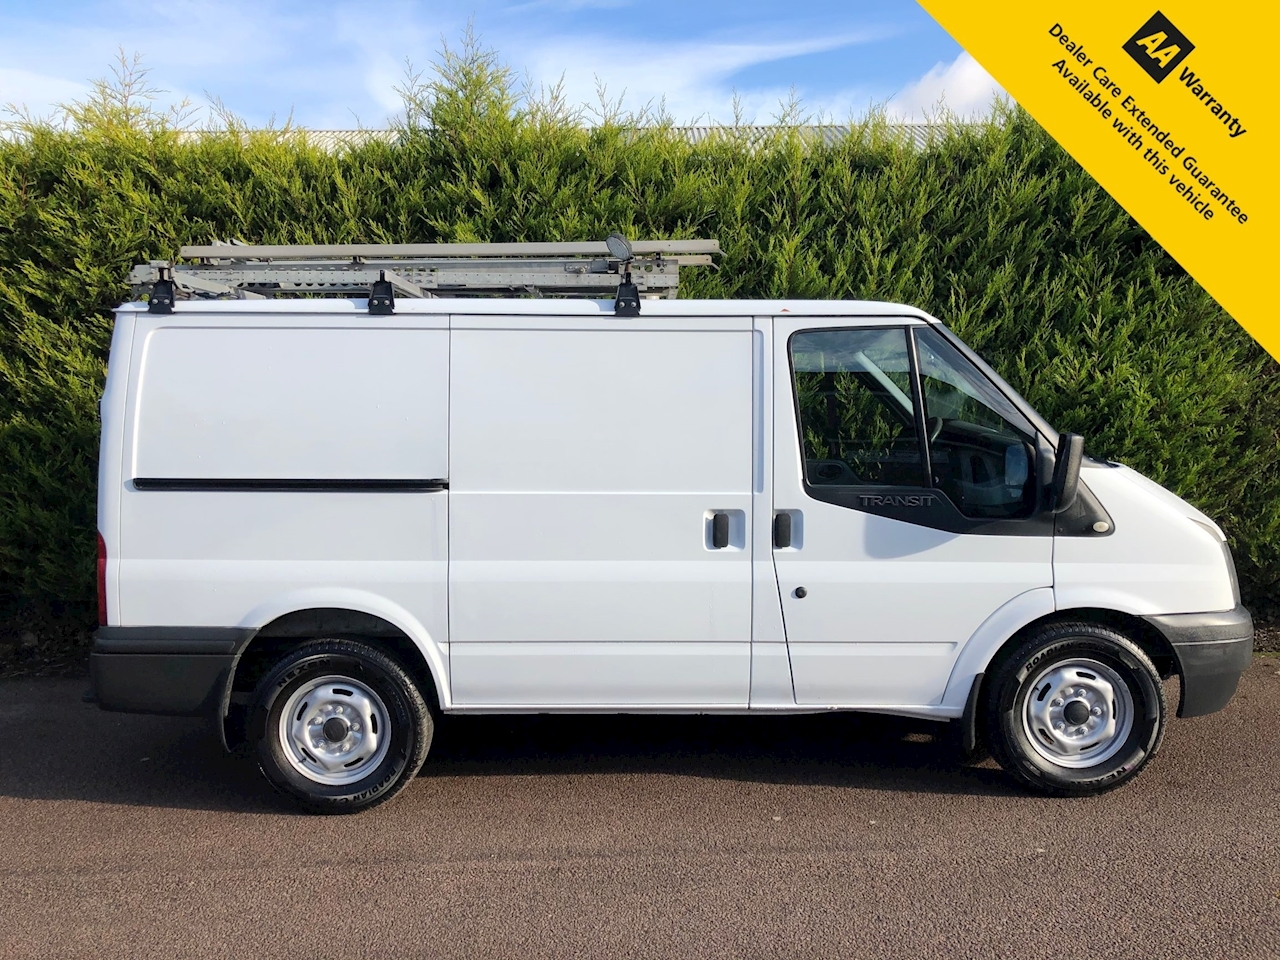 4x4 panel van for sale uk